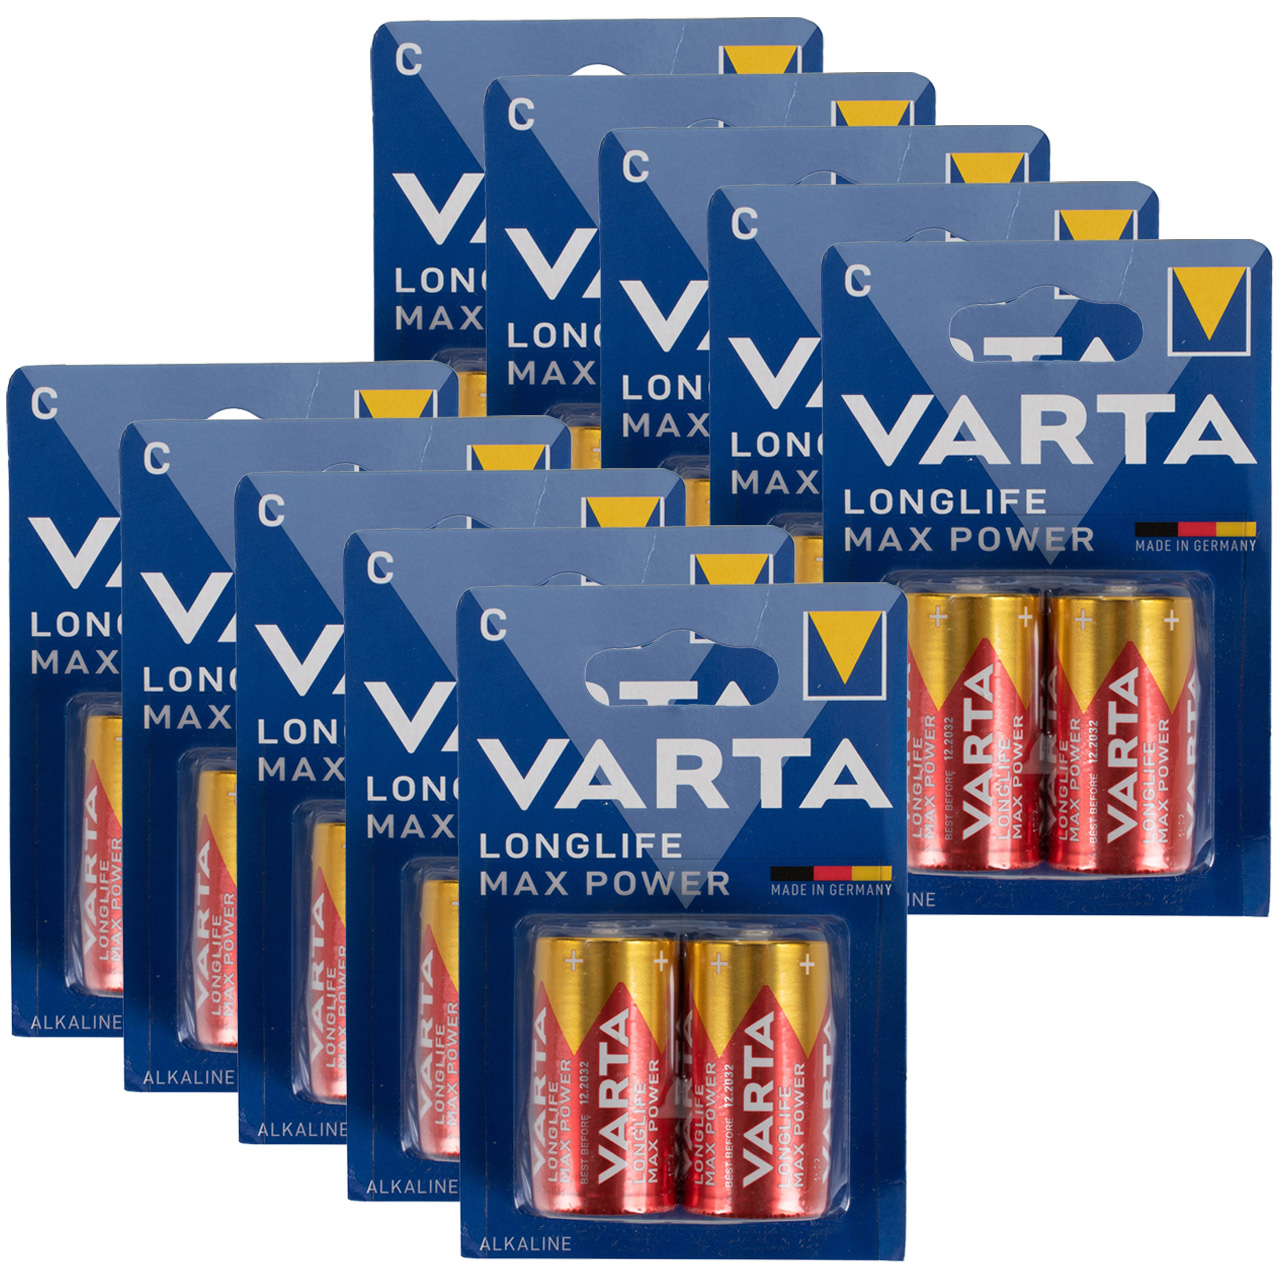 20x VARTA LONGLIFE MAX POWER ALKALINE Batterie C BABY 4714 LR14 MN1400 1,5V